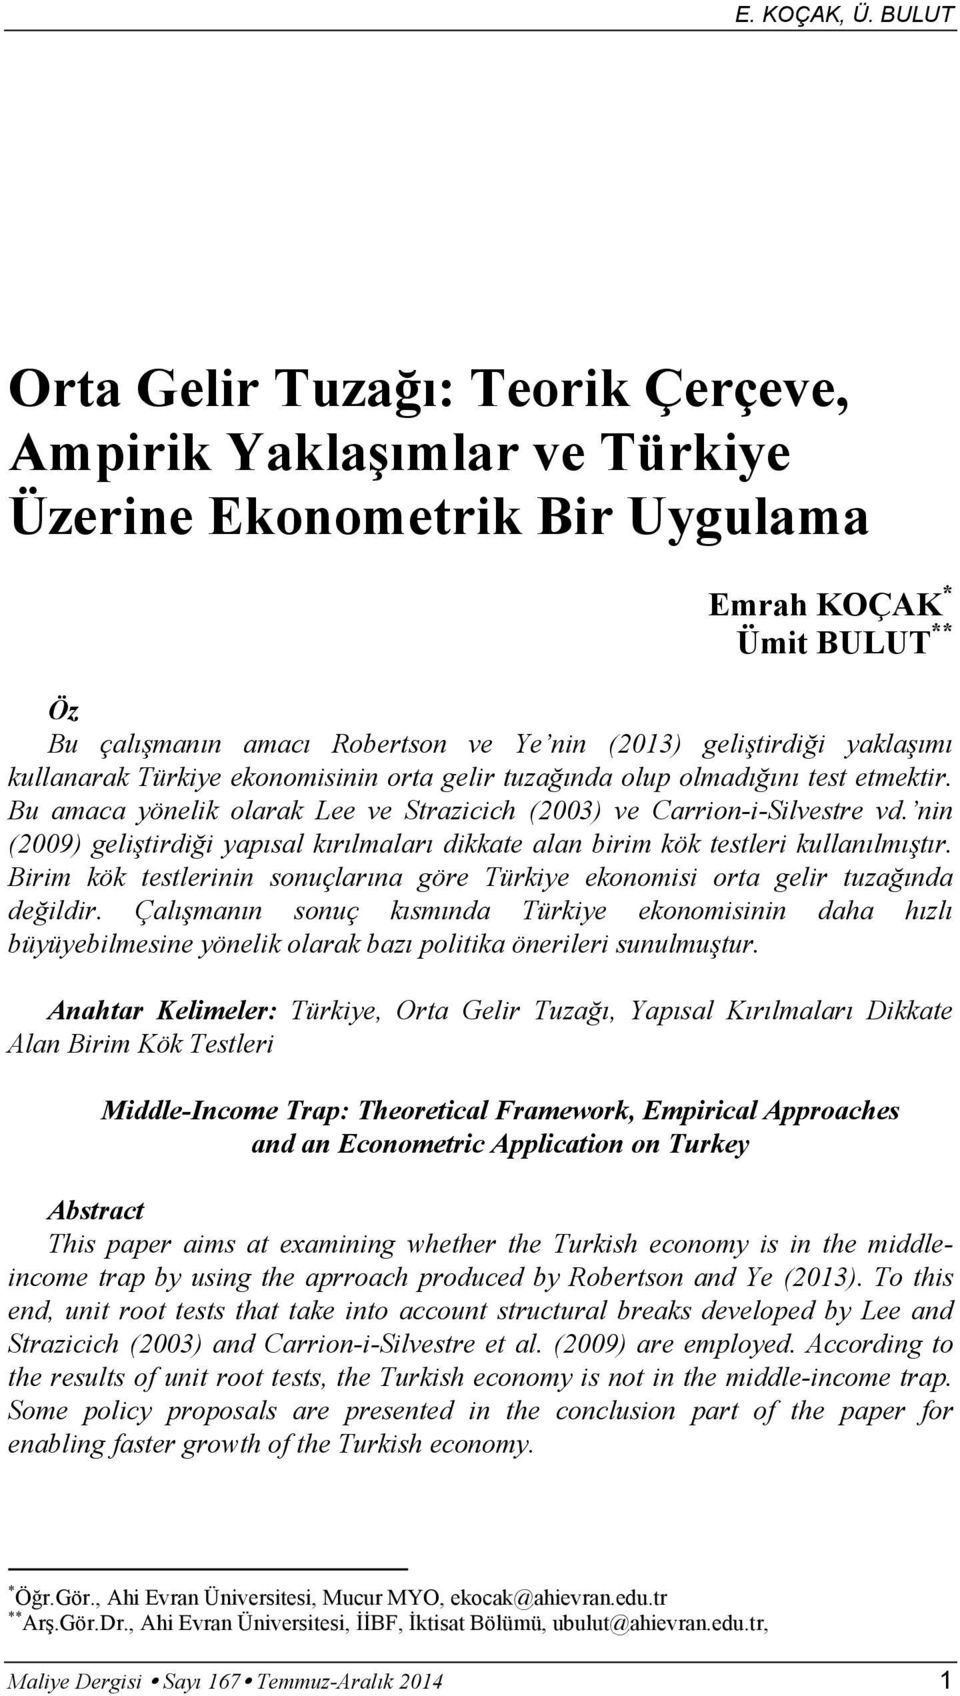 kullanarak Türkiye ekonomisinin orta gelir tuza nda olup olmad n test etmektir. Bu amaca yönelik olarak Lee ve Strazicich (2003) ve Carrion-i-Silvestre vd.